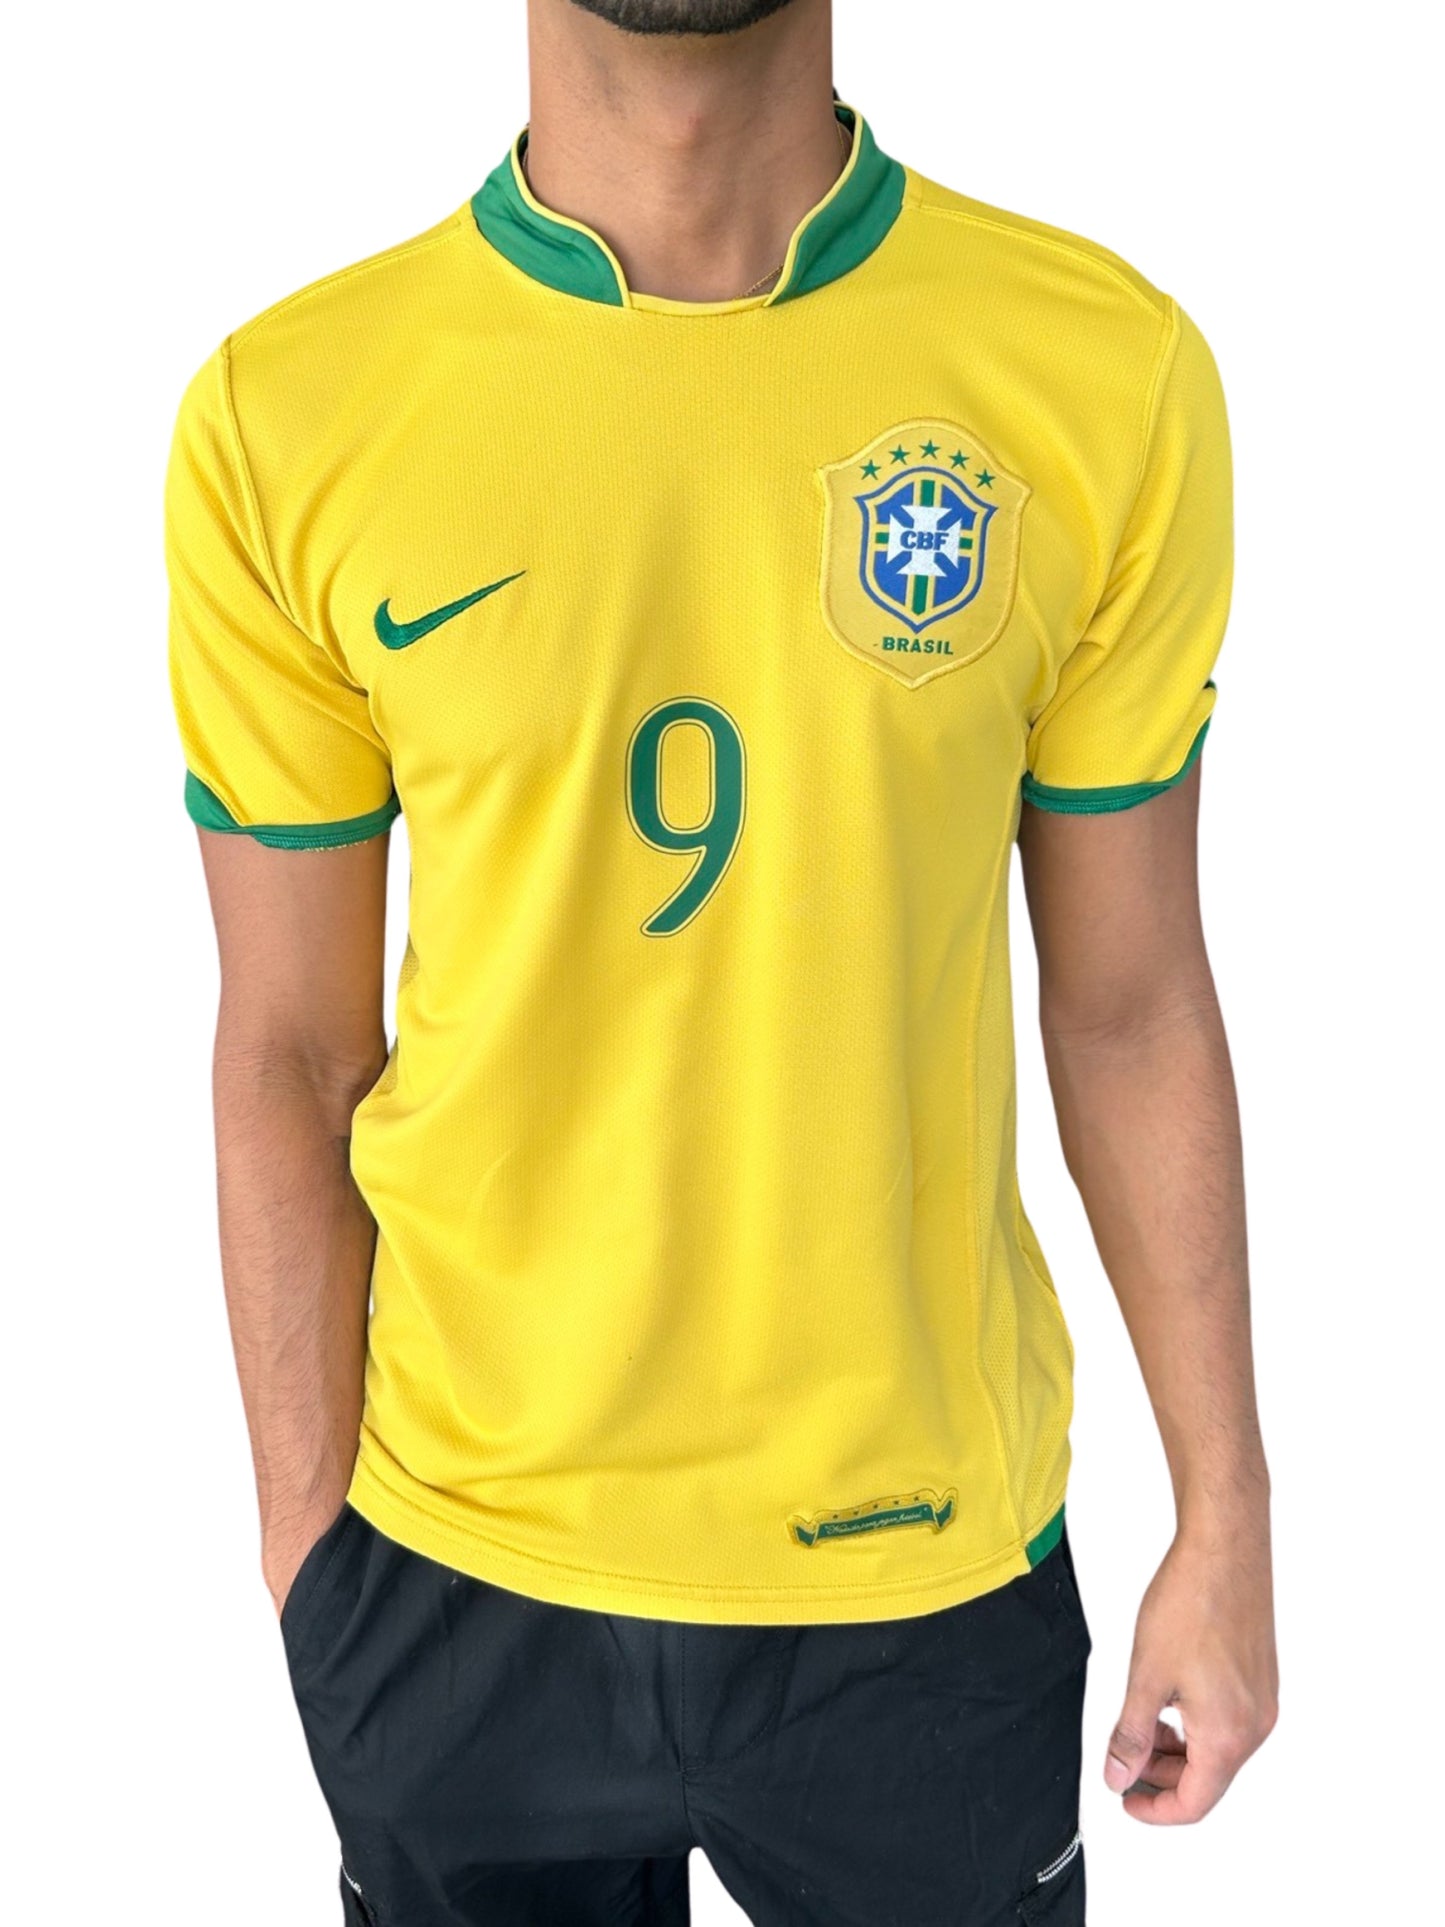 Brazil Seleção 2006 Home Shirt, #9 Ronaldo - S